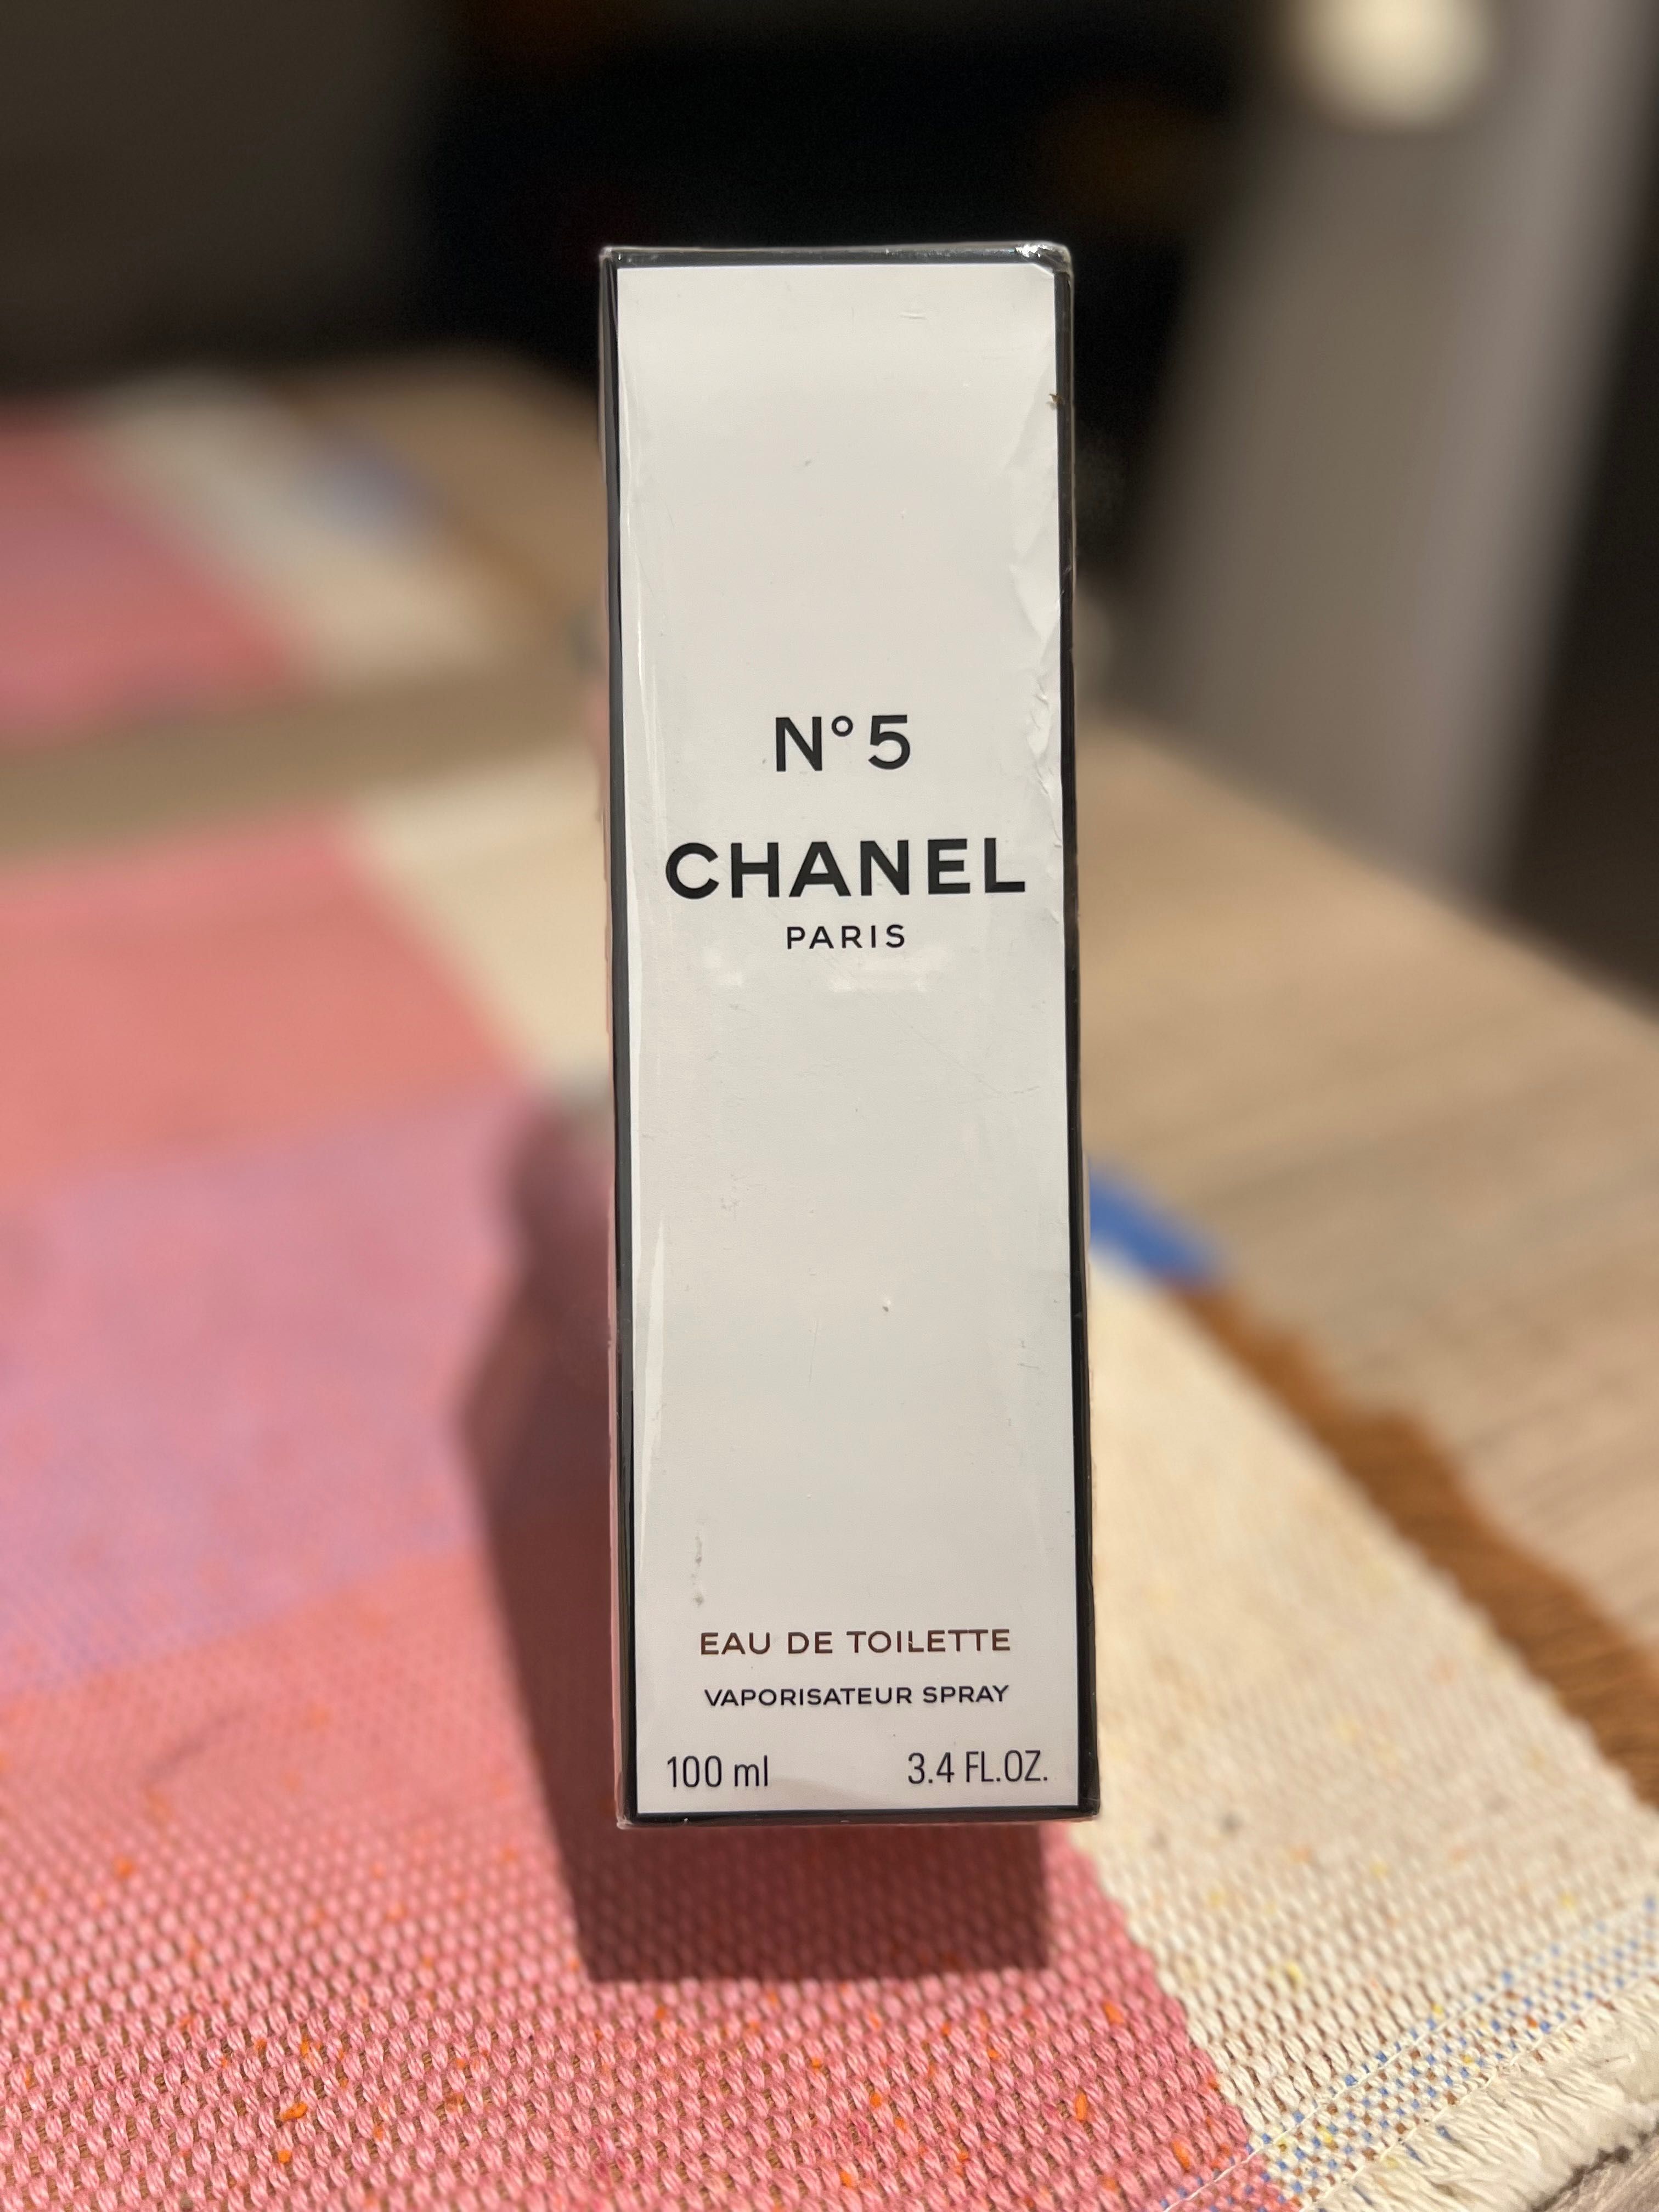 Vânzare Chanel no5 sigilat,100 ml eau de toilette.